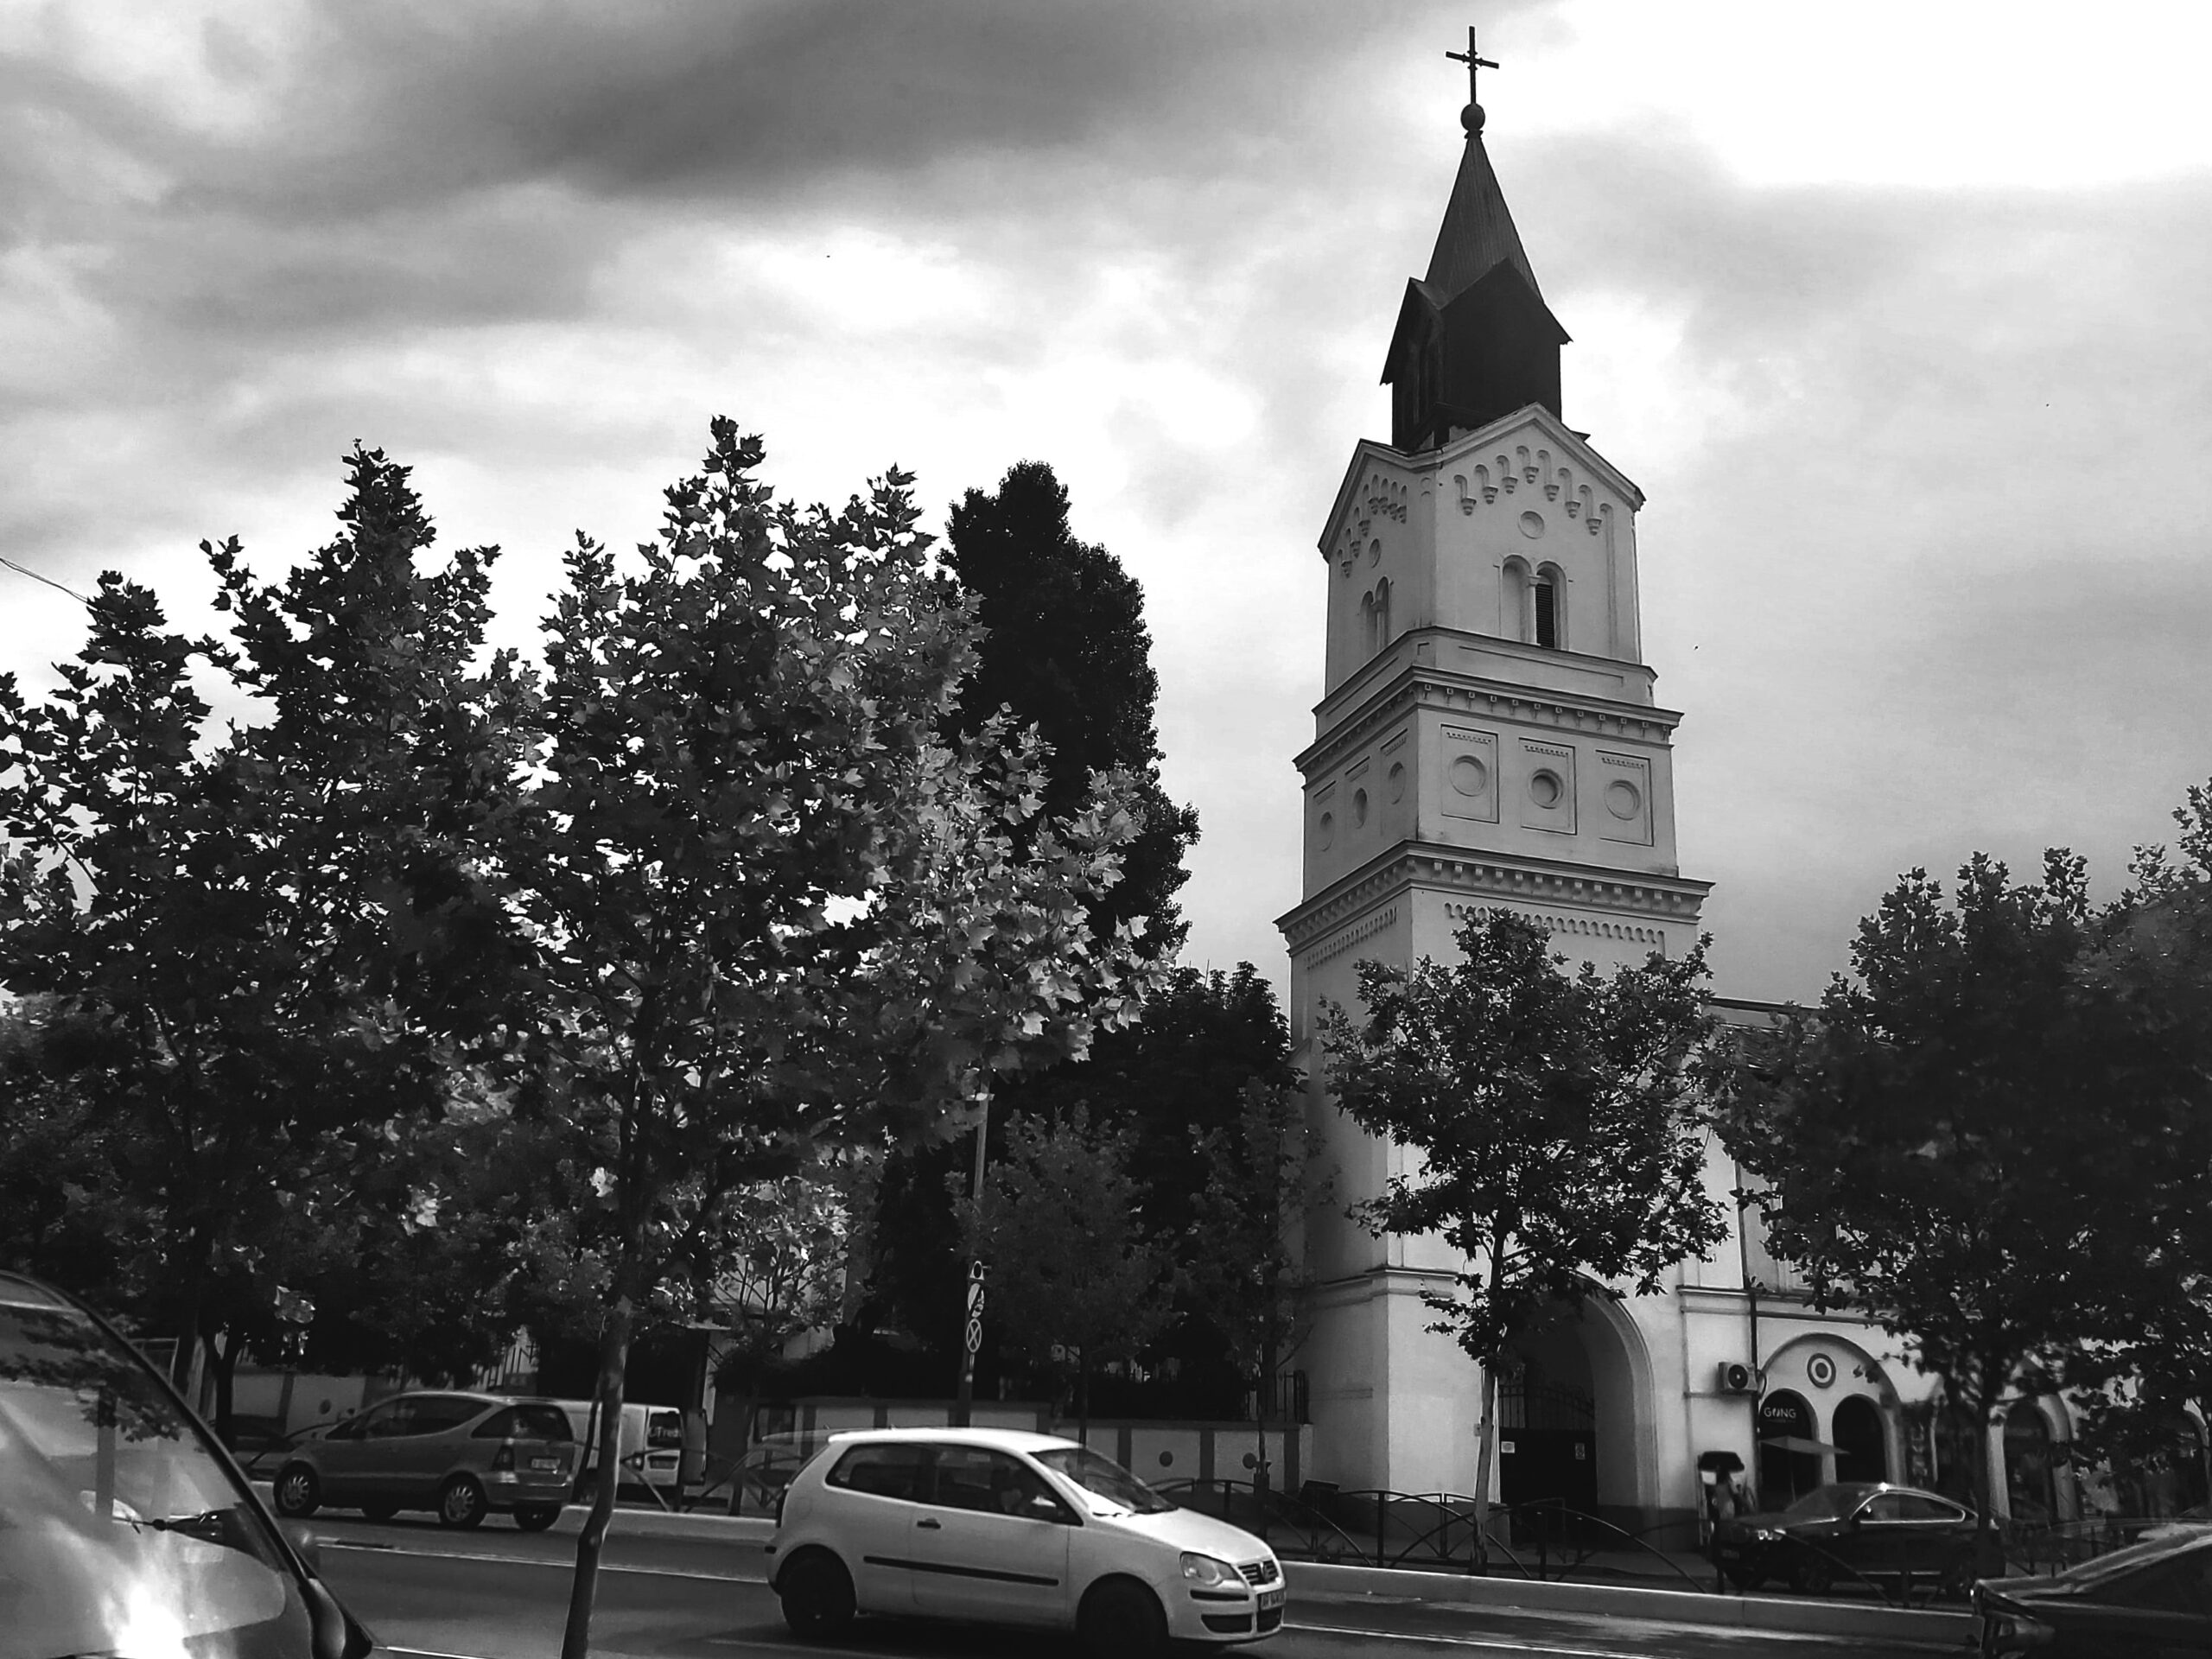 A black and white shot of a church in București, Romania